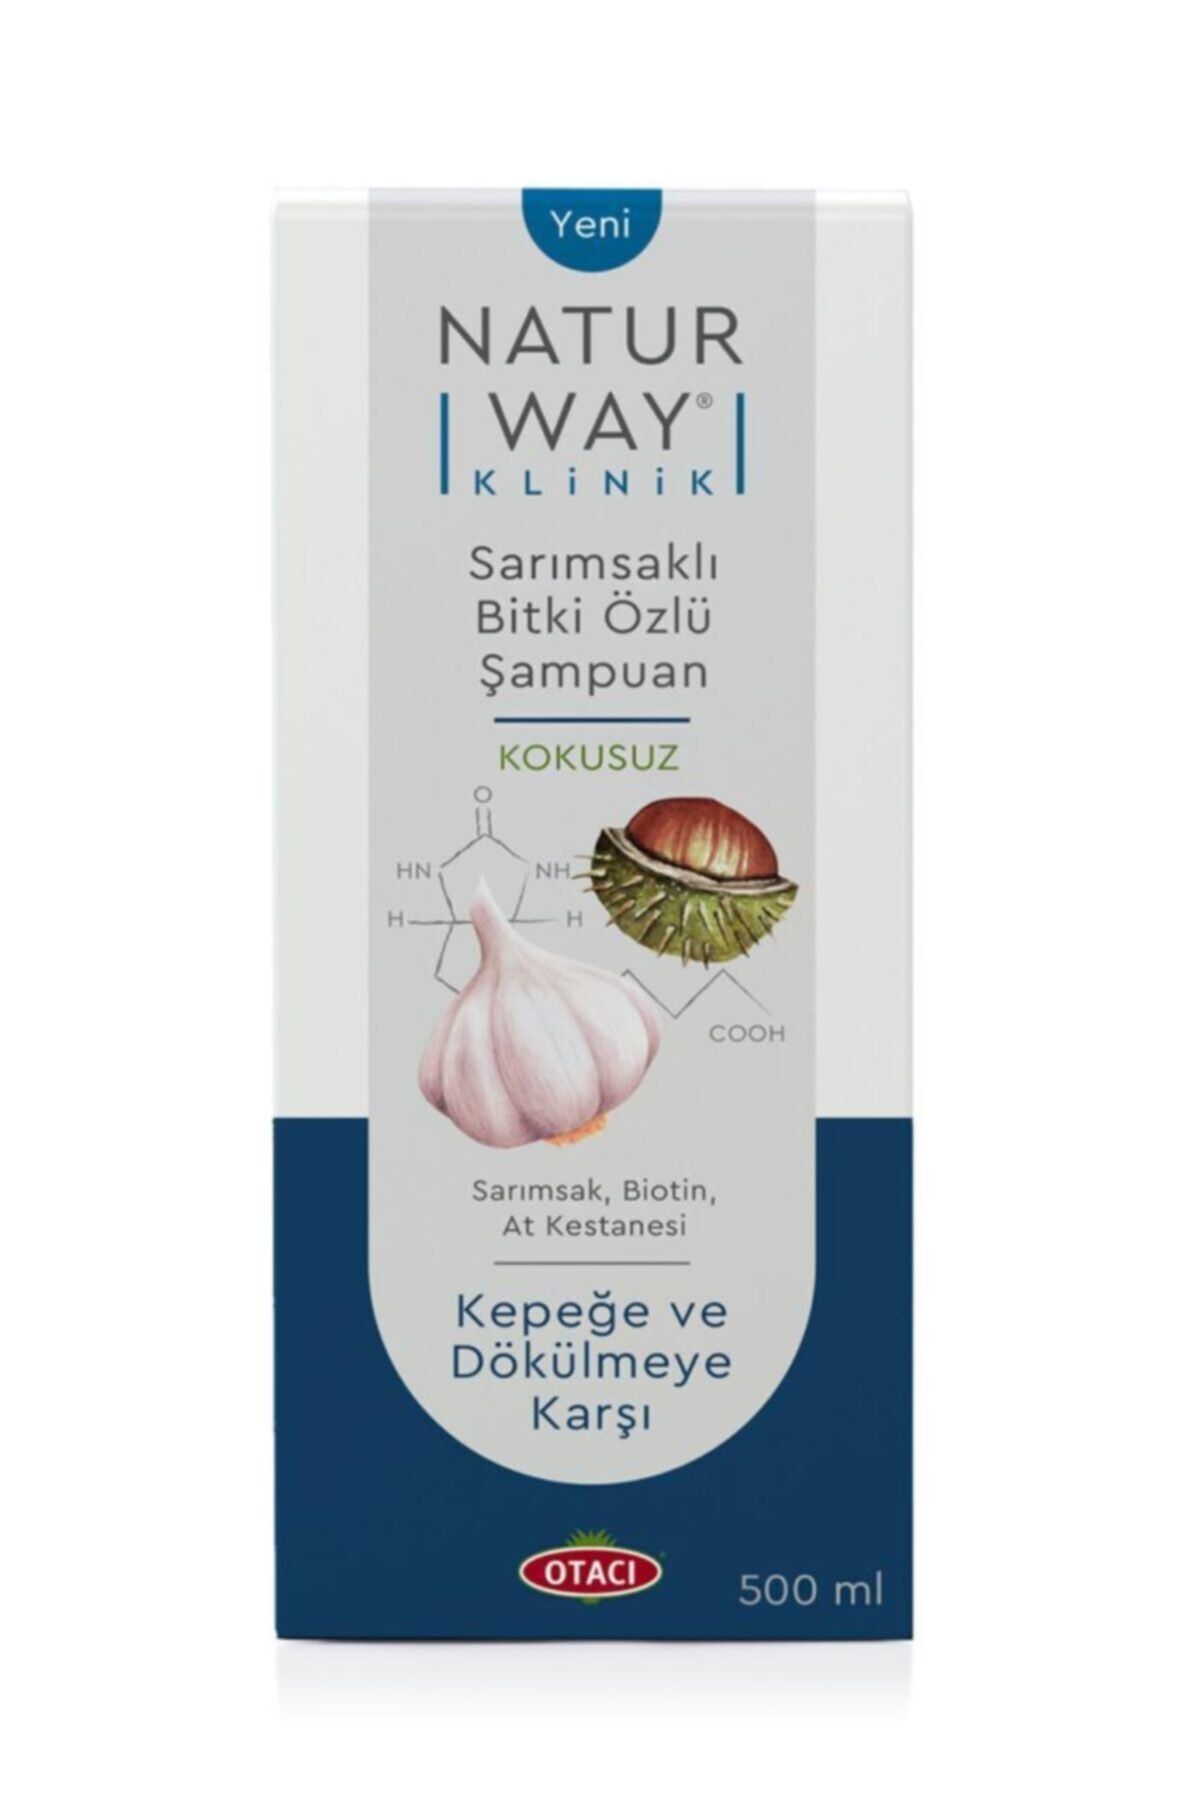 Otacı Naturway Klinik Sarımsaklı Şampuan 500  ml